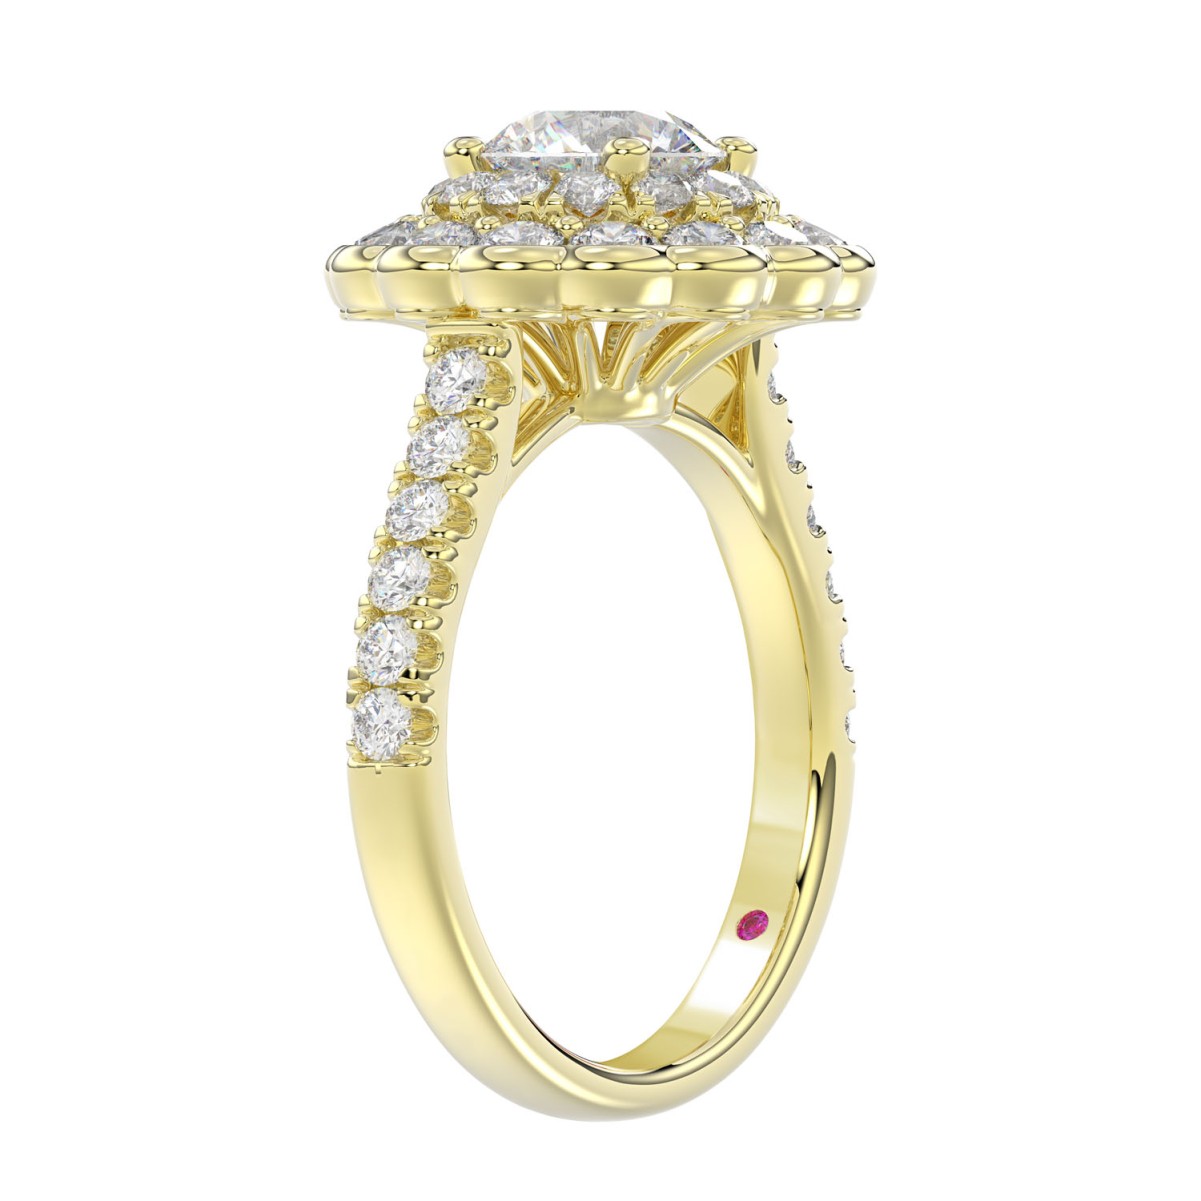 18K YELLOW GOLD 1 1/4CT ROUND DIAMOND LADIES RING (CENTER STONE ROUND DIAMOND 1/2CT)